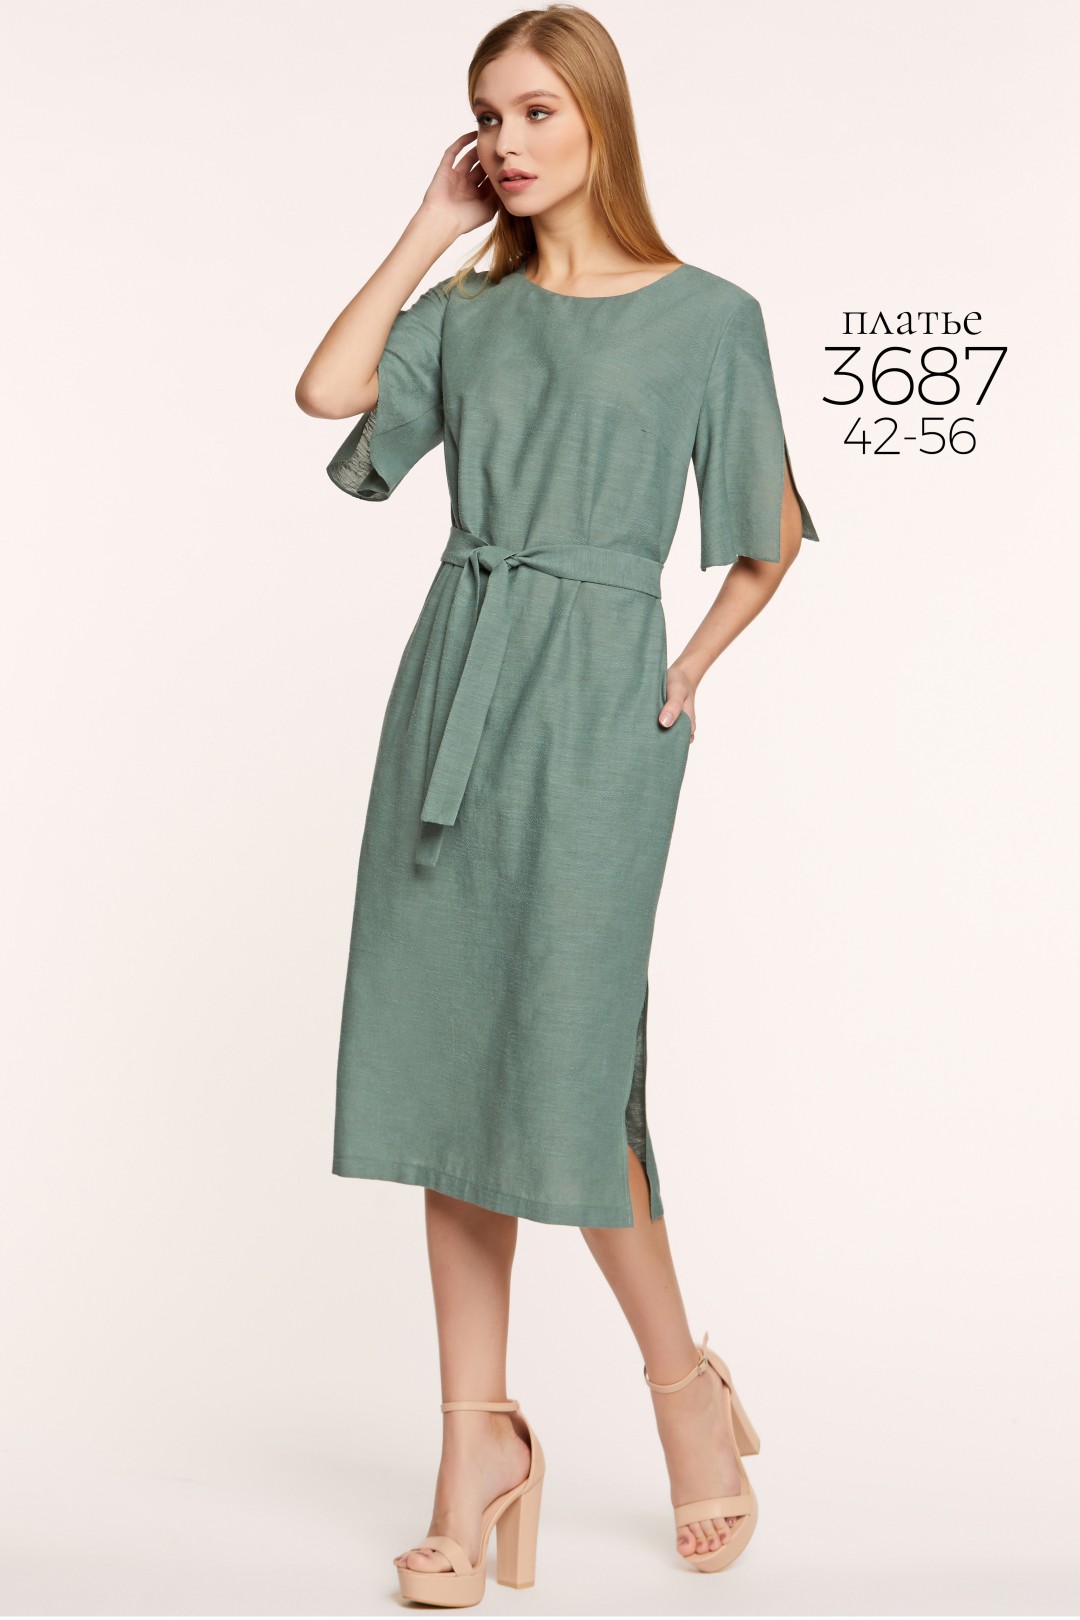 Платье Bazalini 3687 зеленый